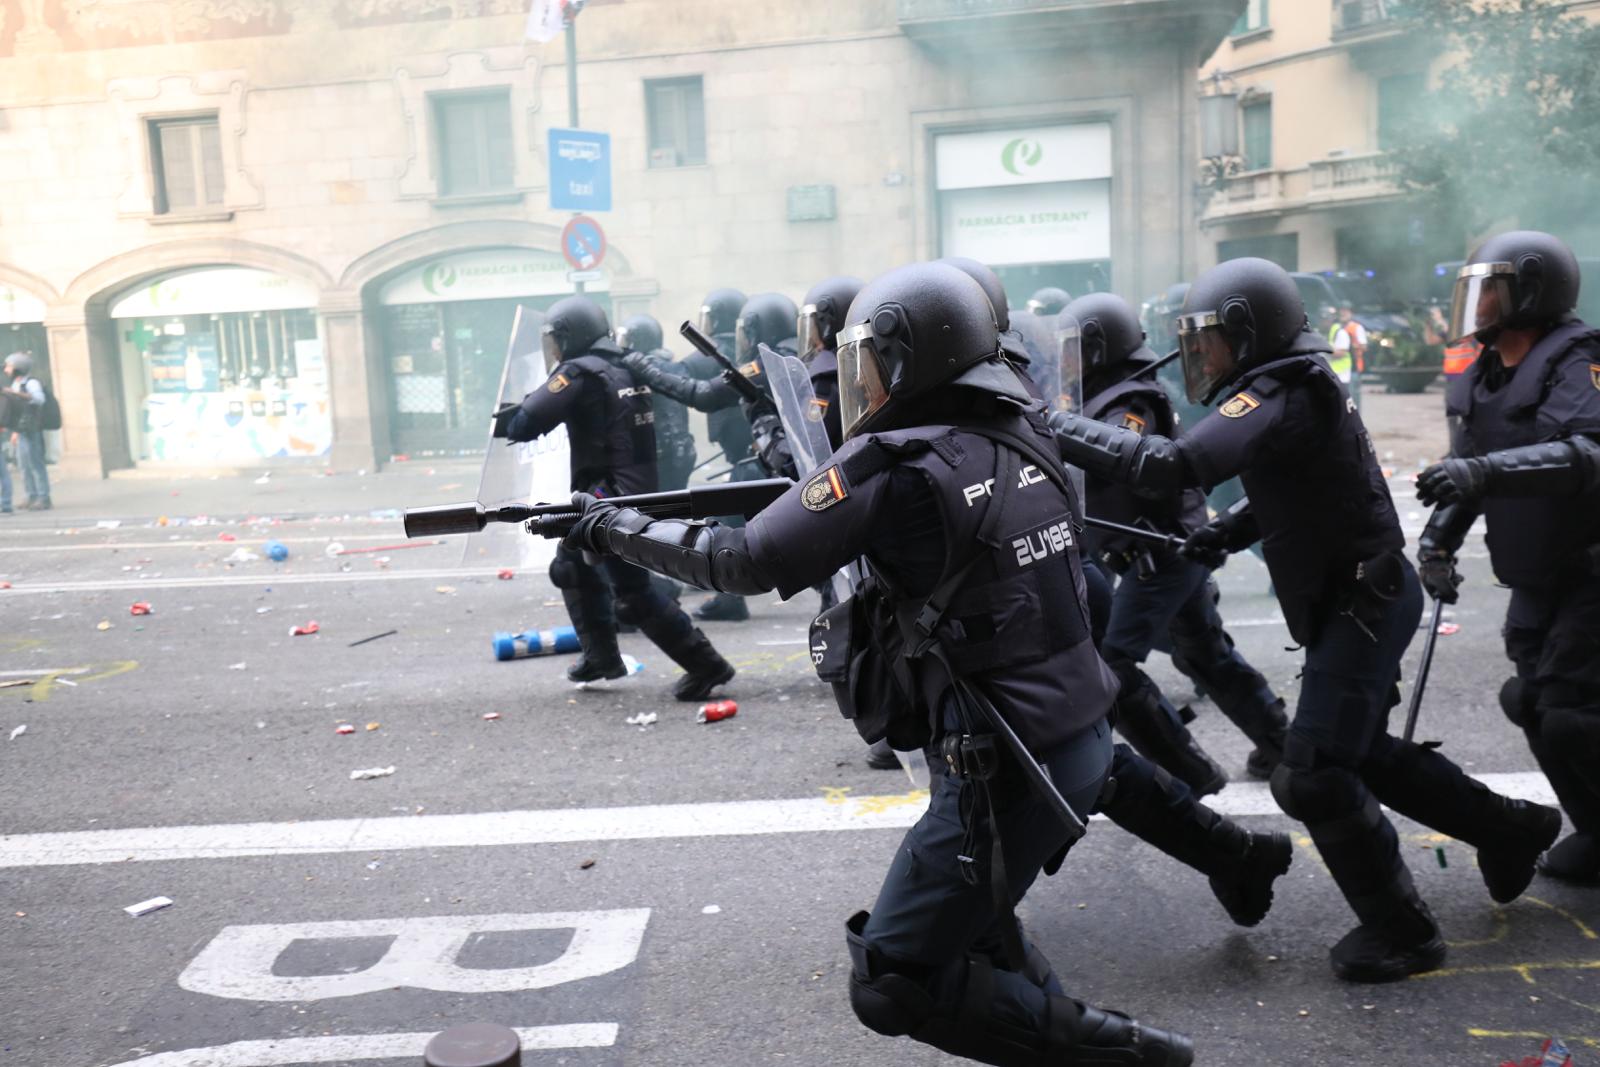 Els àudios de la policia espanyola: "Esto es un infierno"